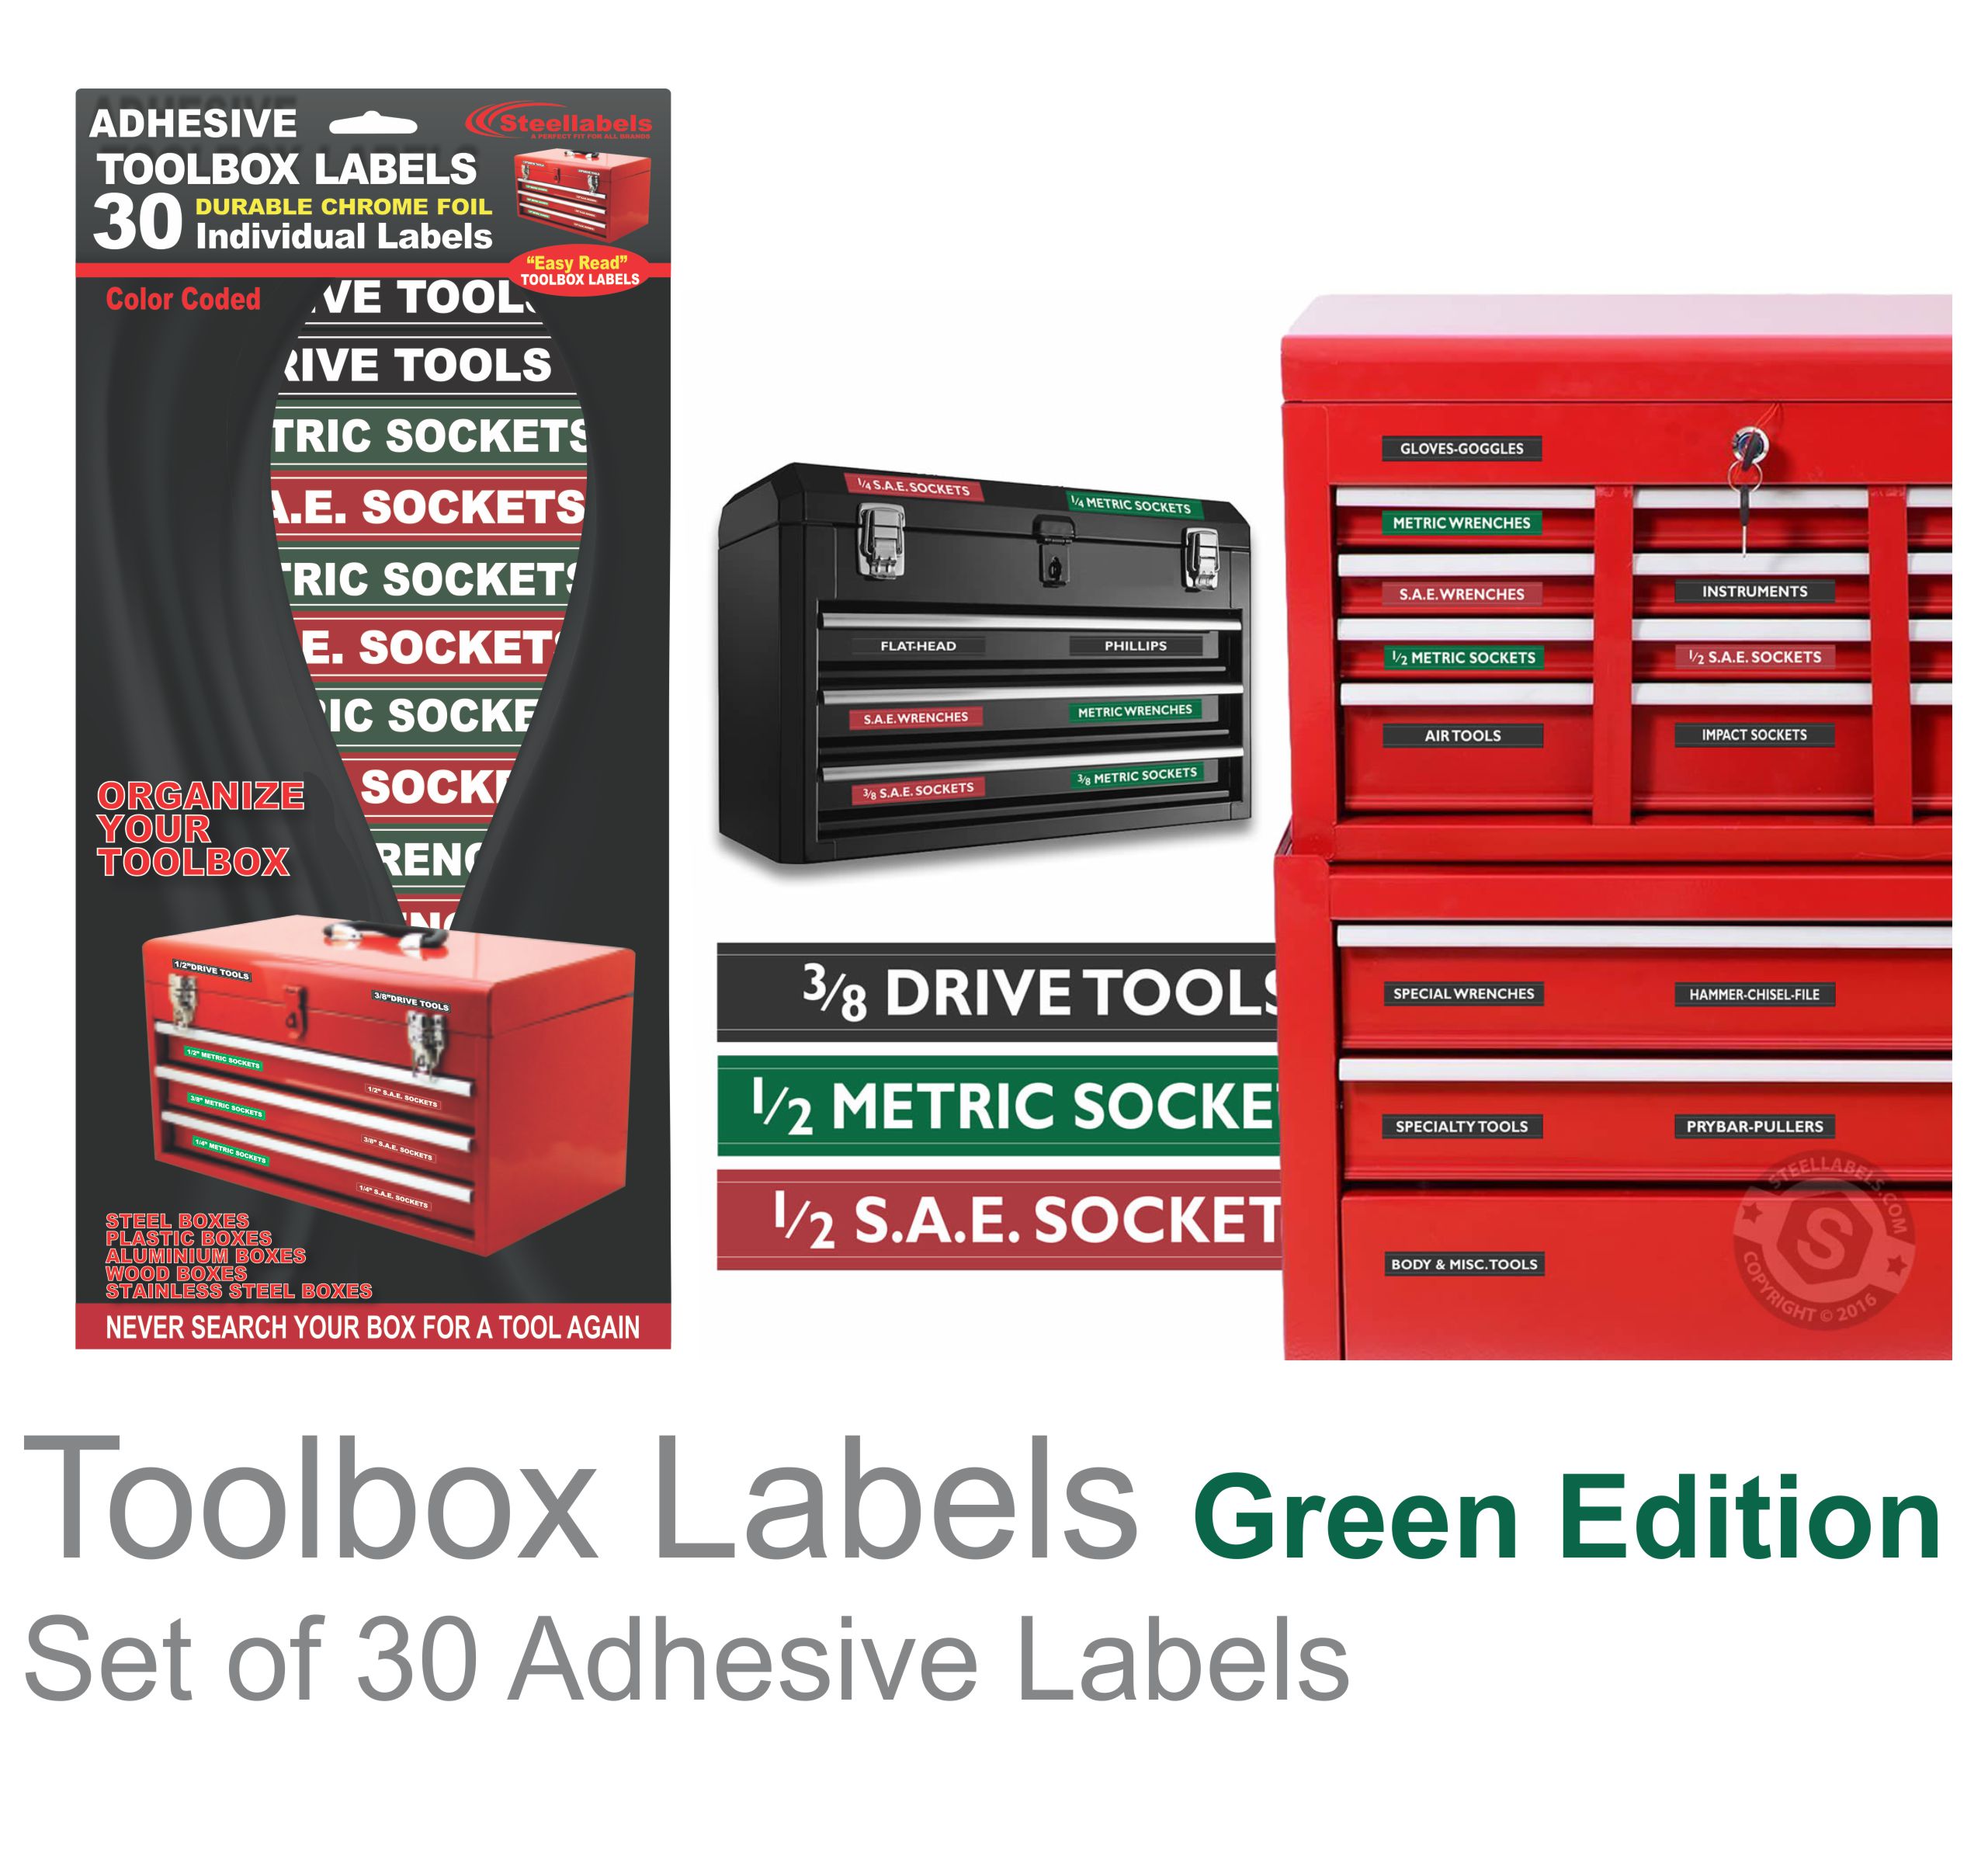 Adhesive Toolbox Green Main